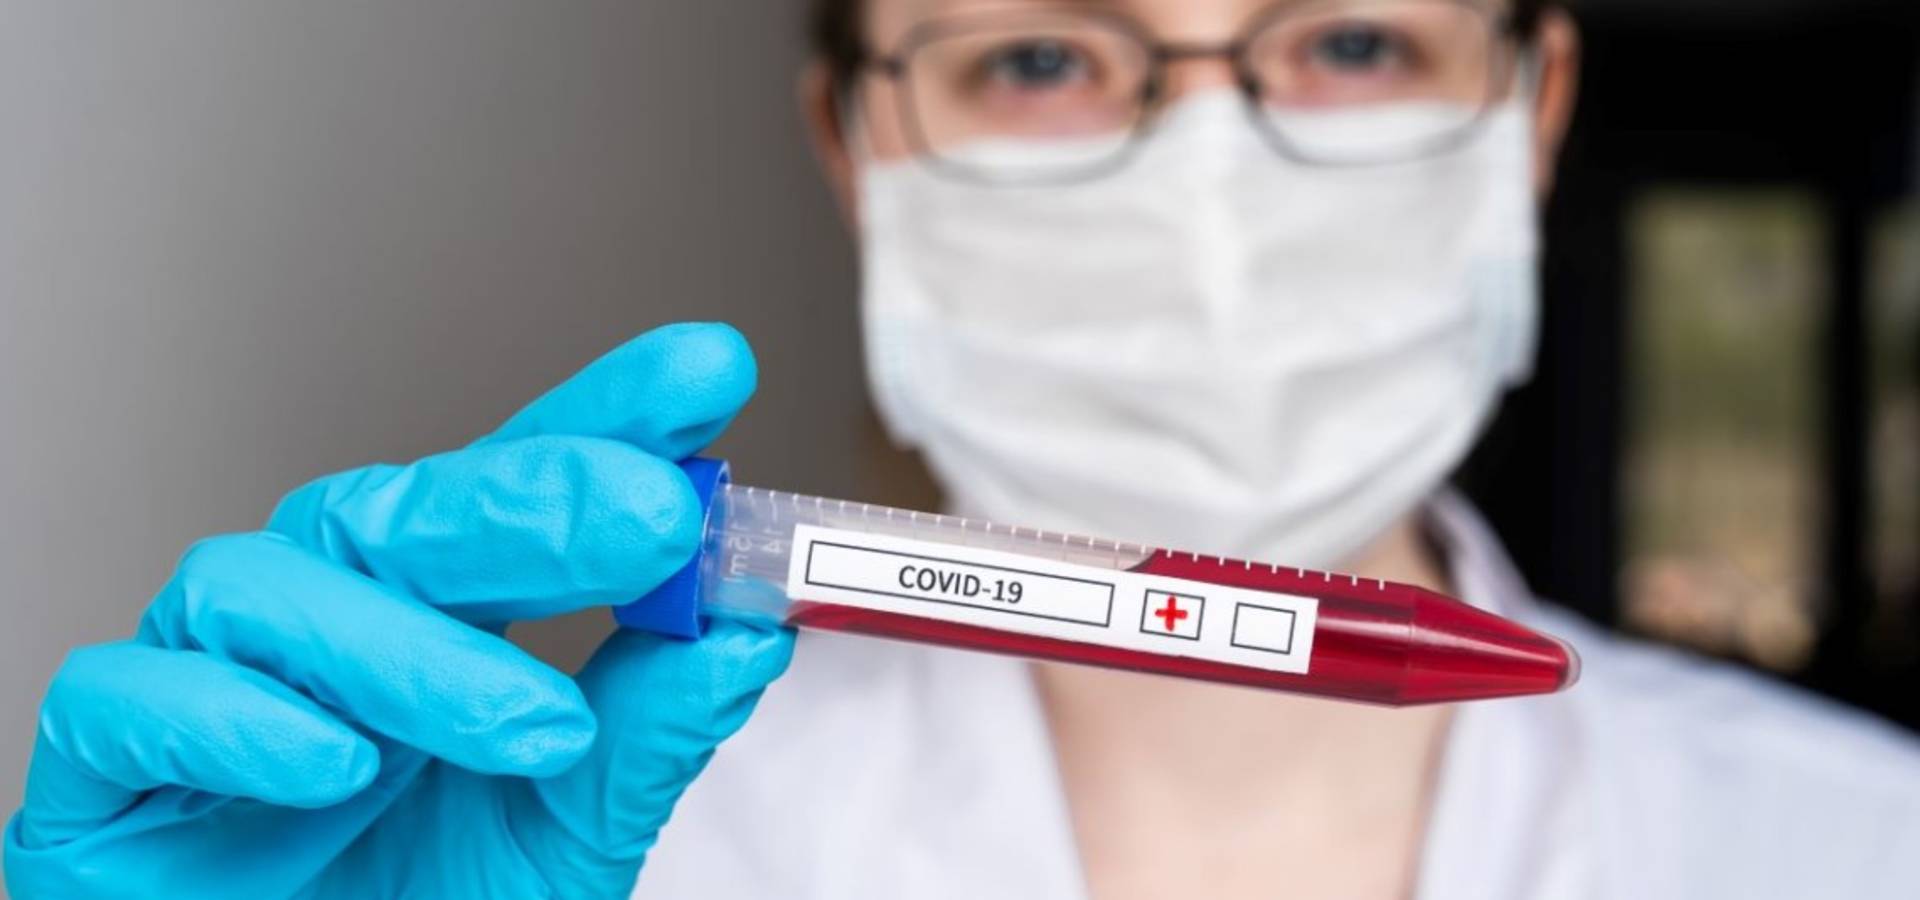 За тиждень у Хмільницькому районі на Вінниччині - коронавірус вразив 28 людей